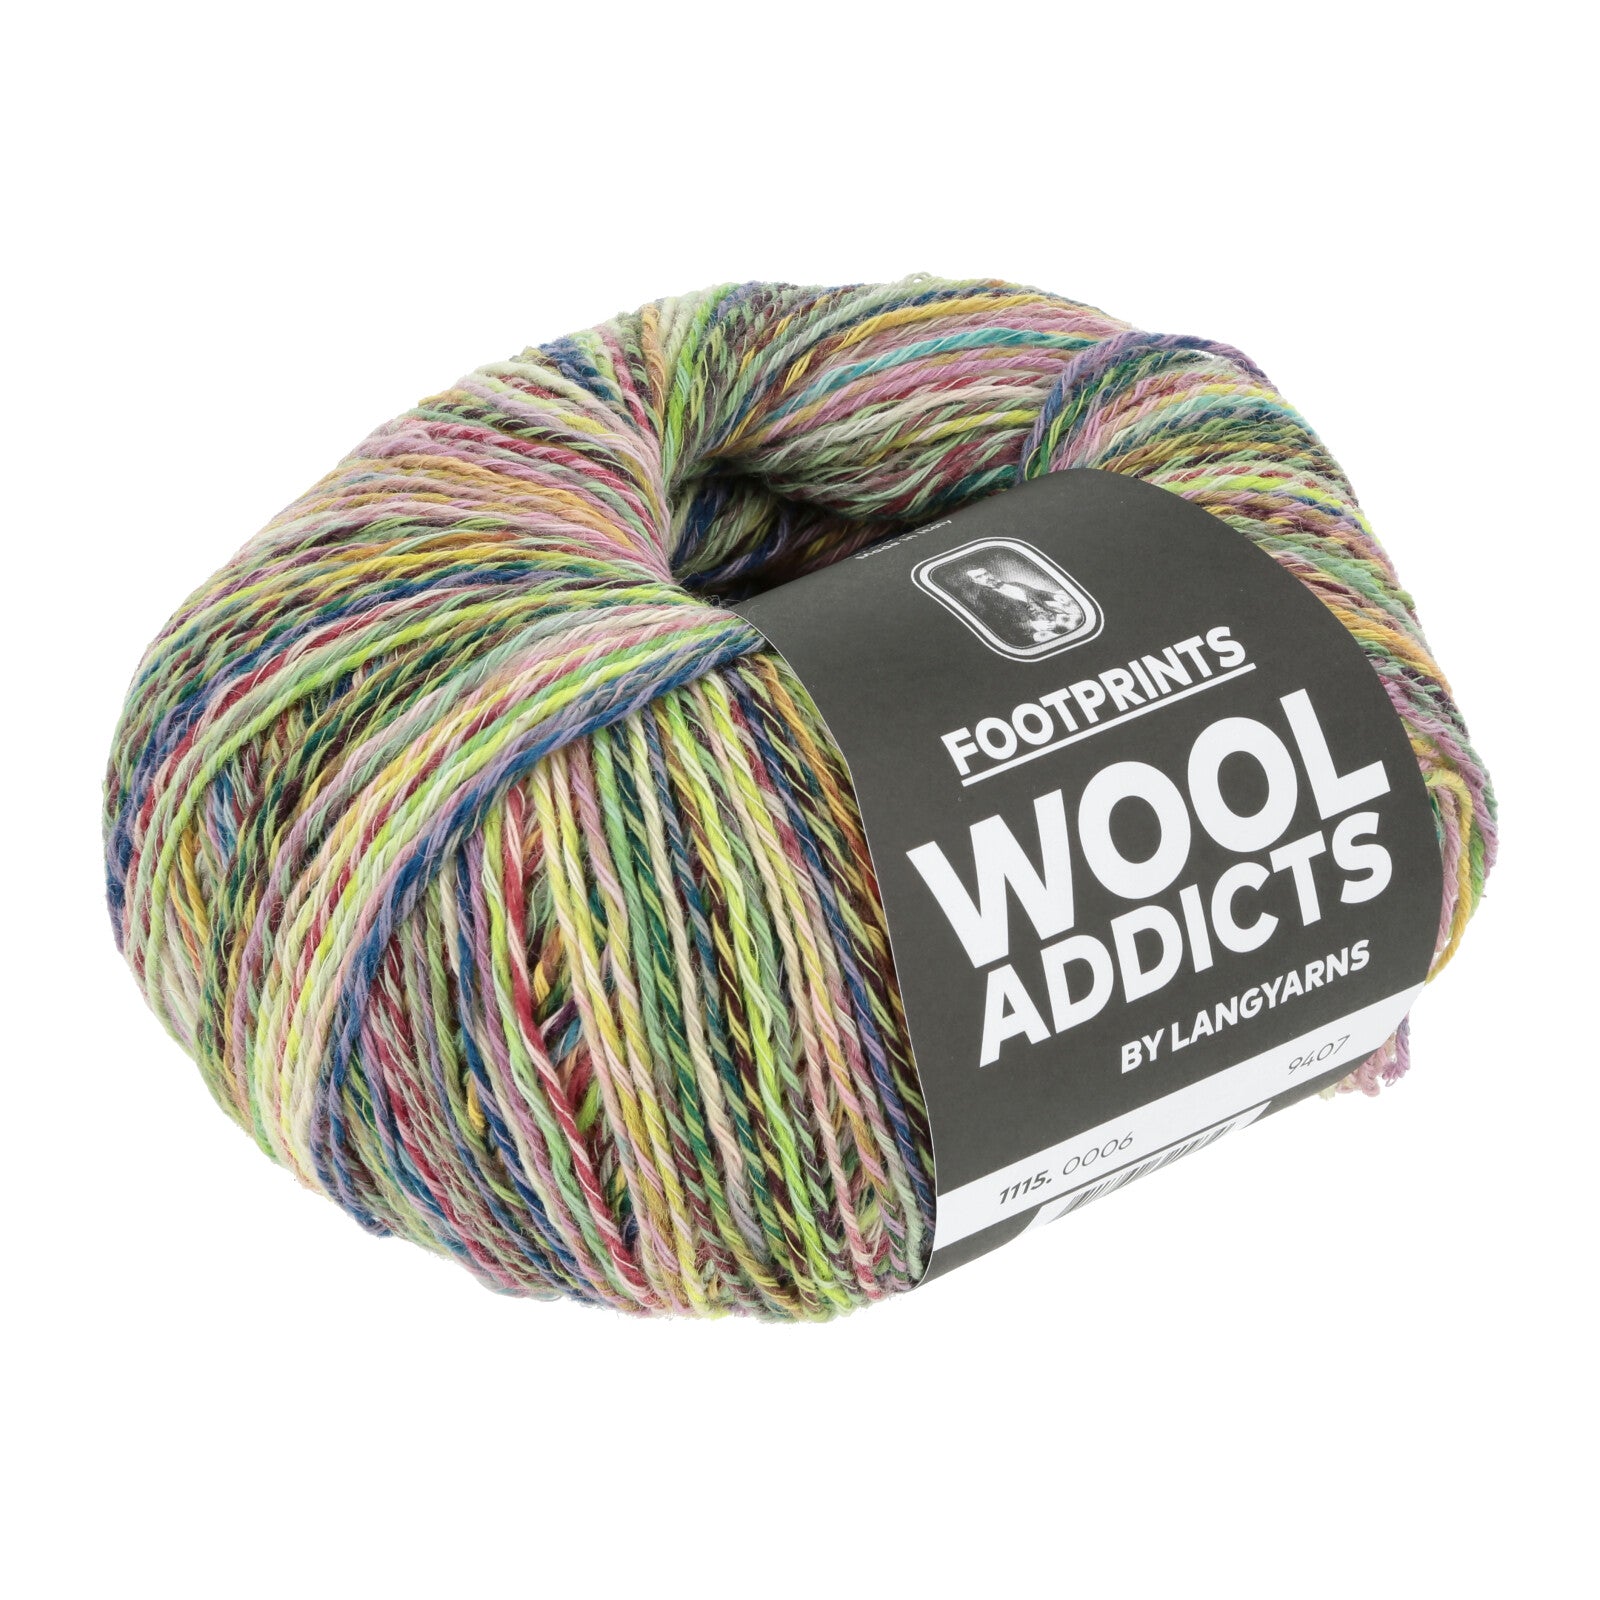 WoolAddicts Footprints yarn color Six